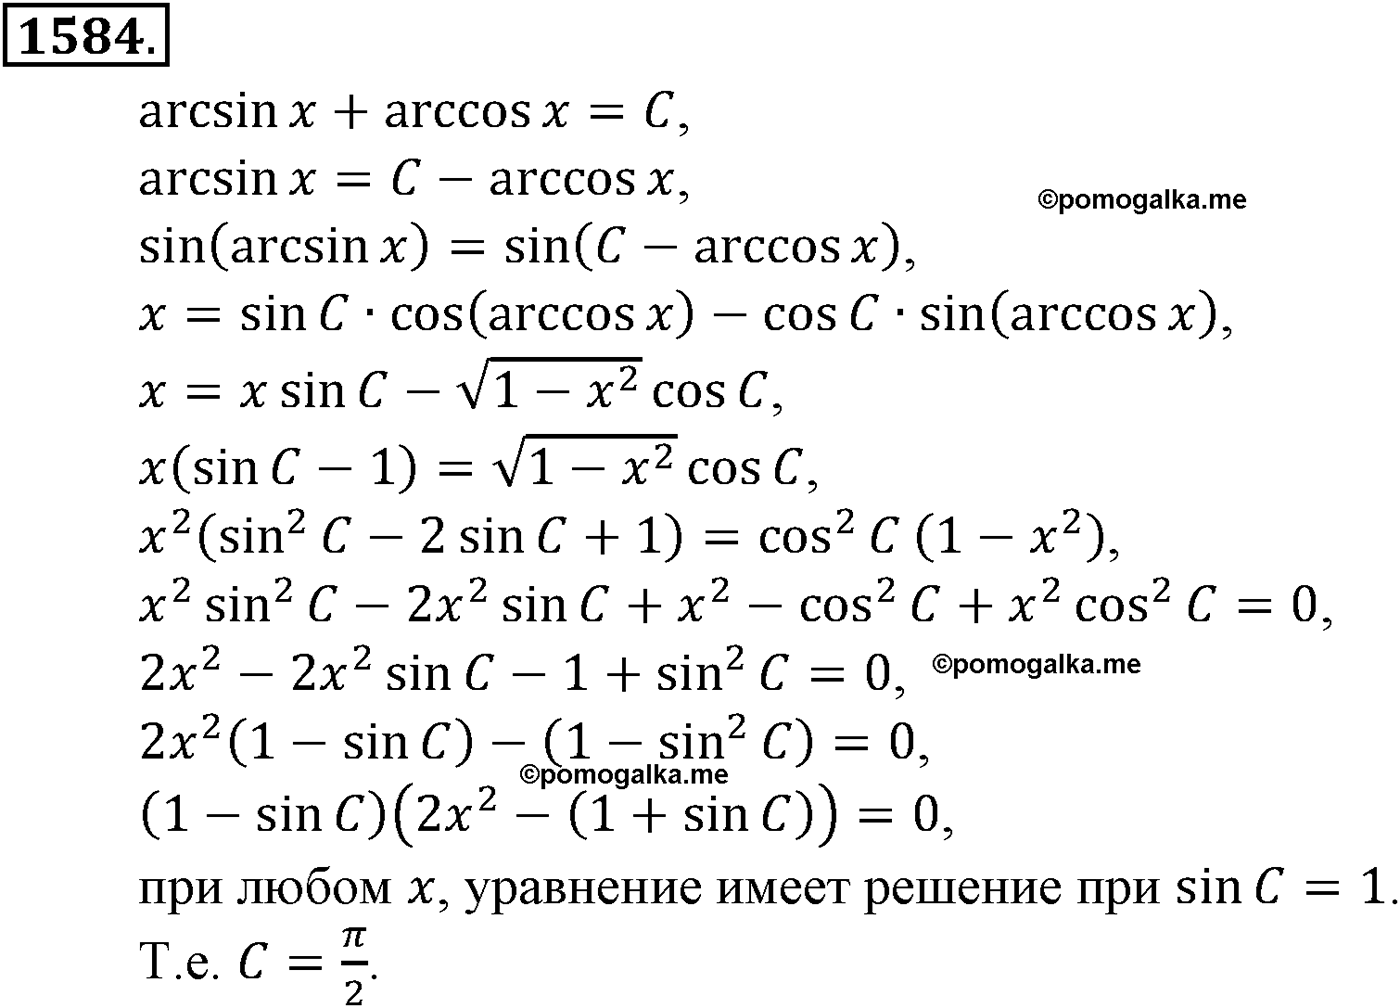 разбор задачи №1584 по алгебре за 10-11 класс из учебника Алимова, Колягина